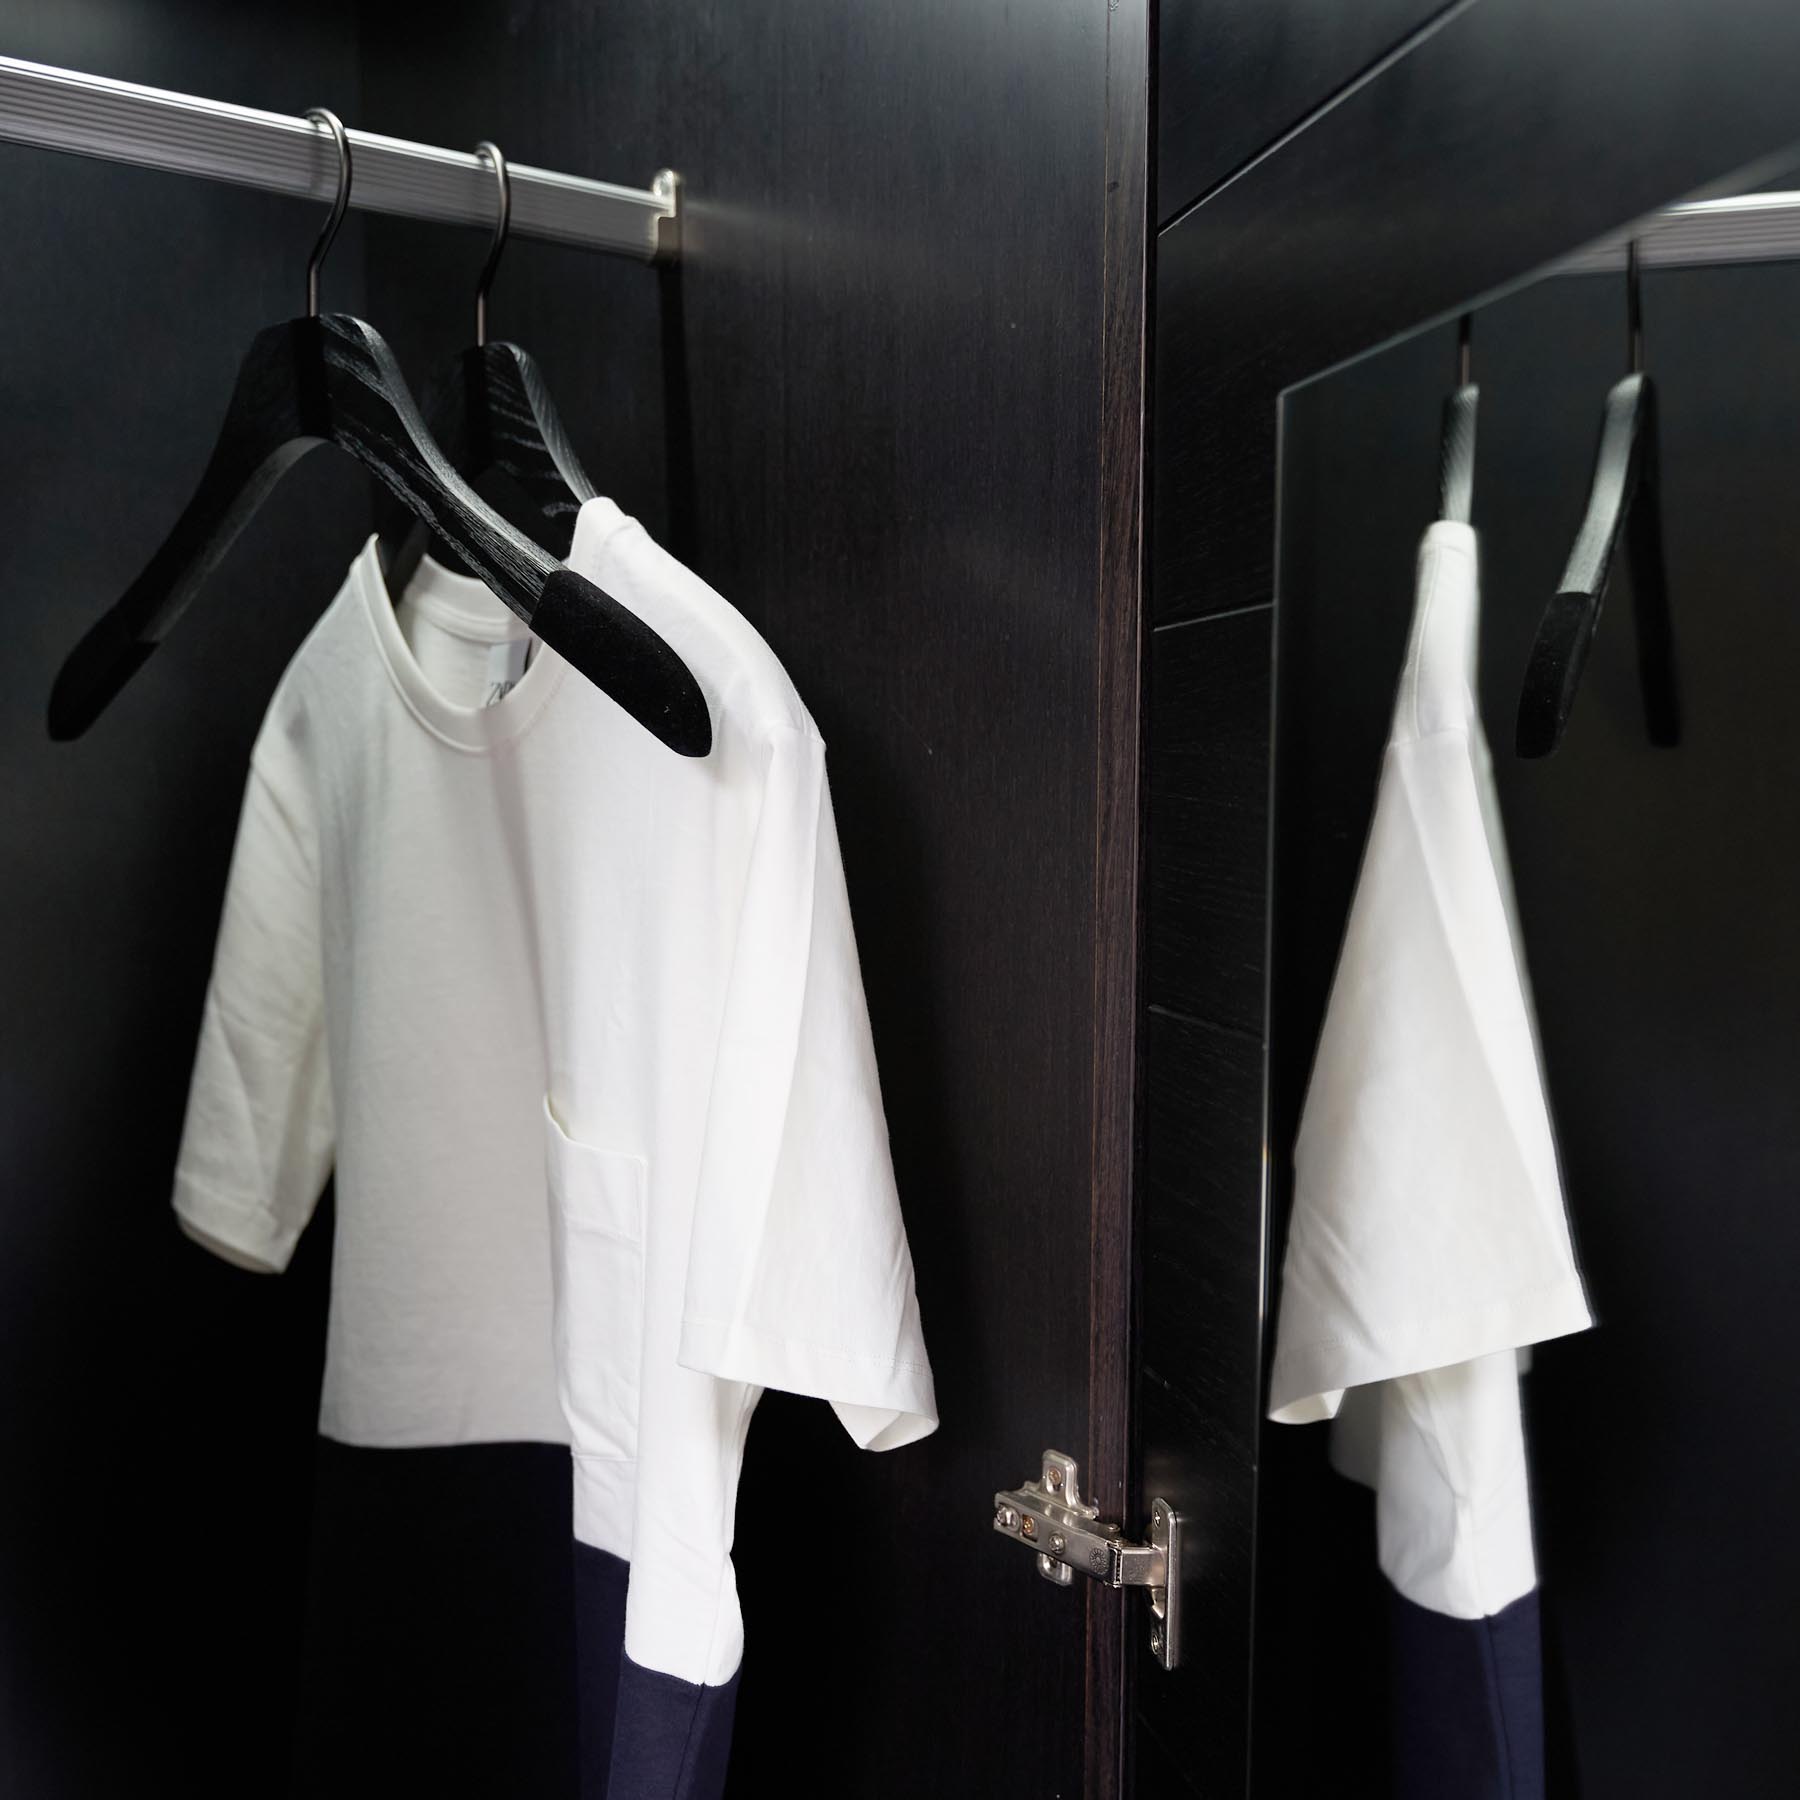 slim wooden luxury hangers for shirt and blouses with non-slip velvet